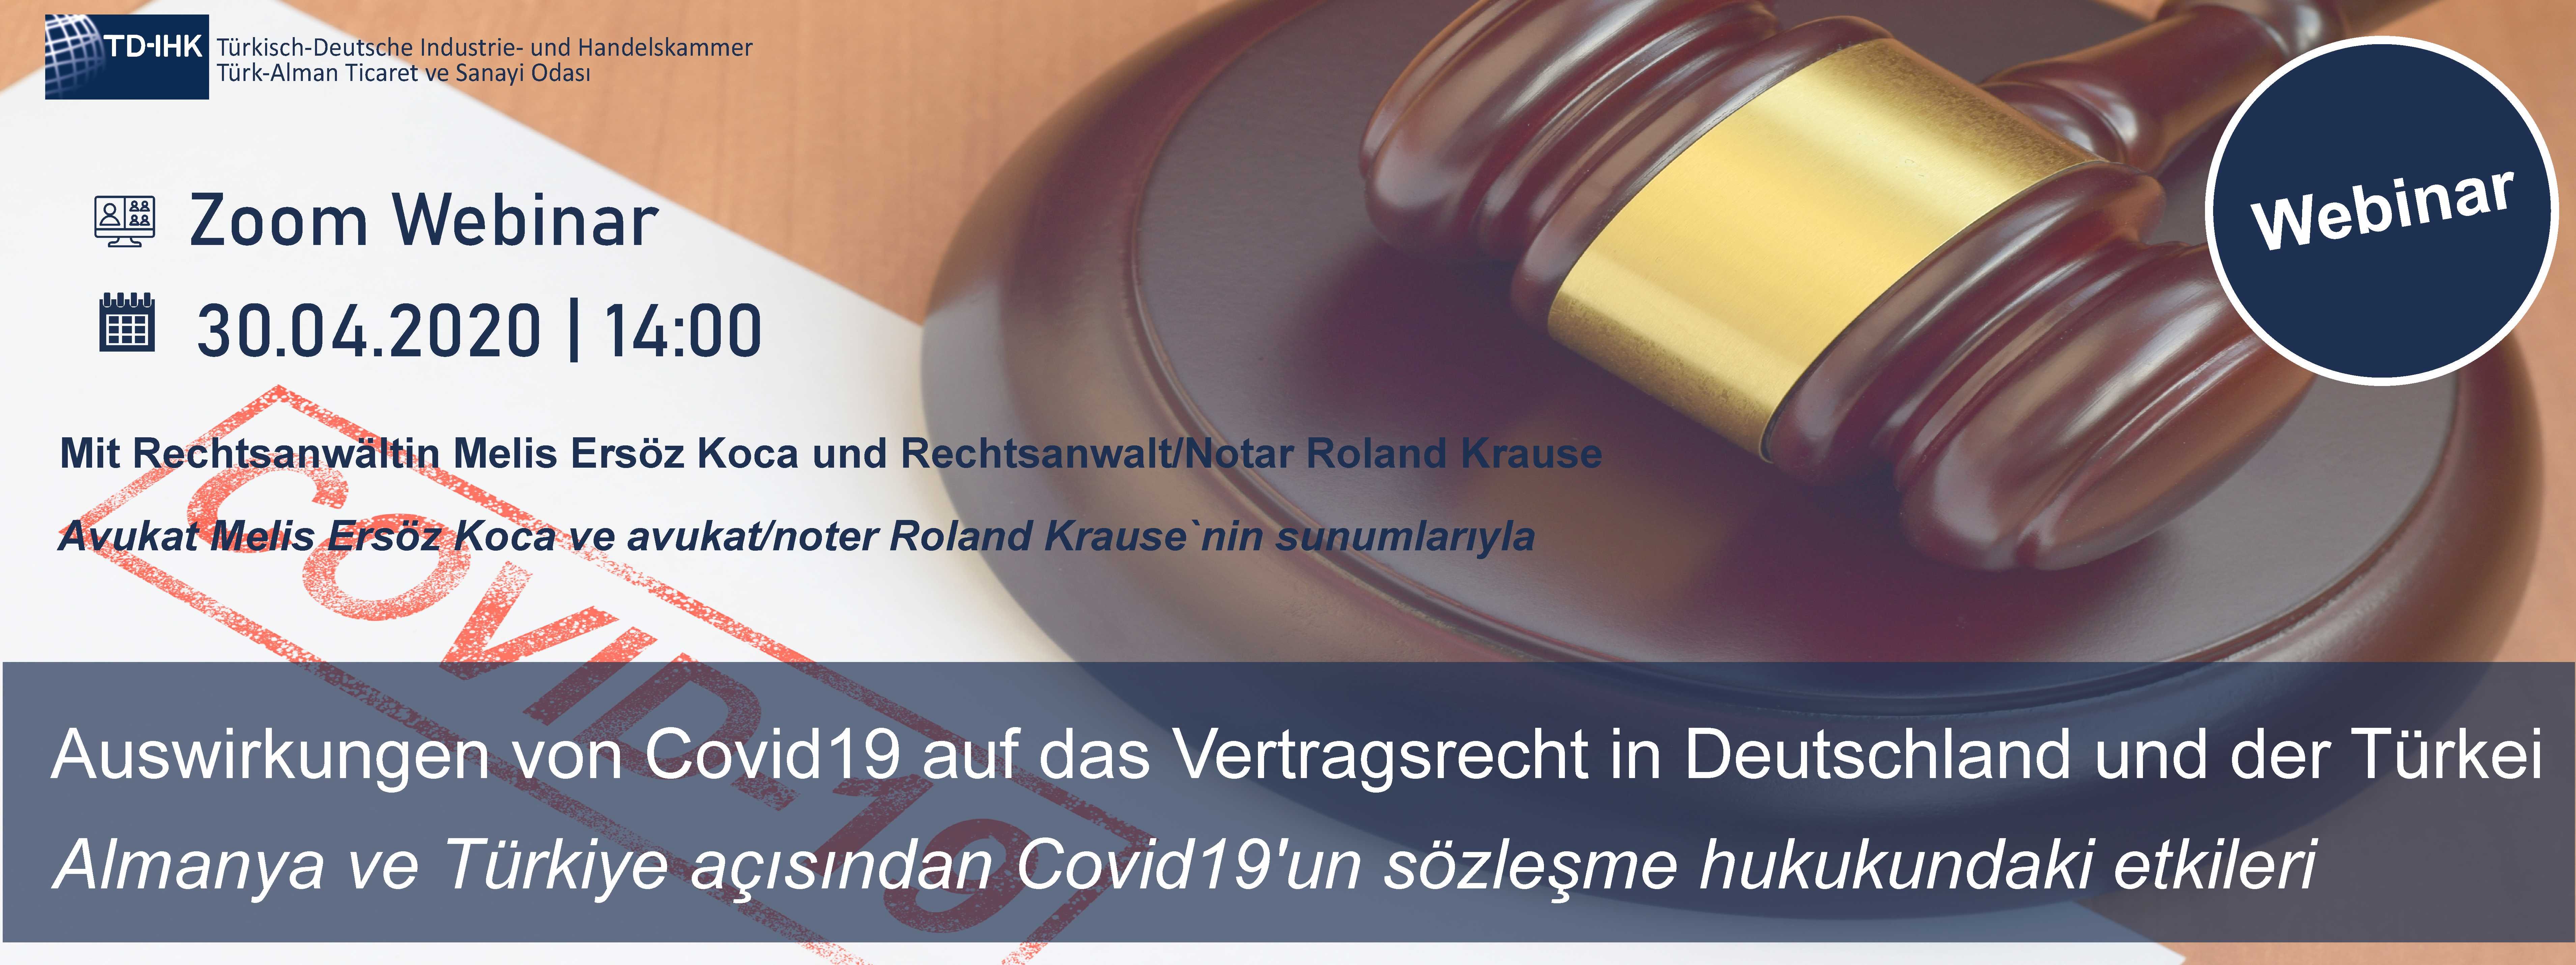 TD-IHK Web Semineri: Covid19'un Almanya ve Türkiye'de sözleşme hukukuna etkisi